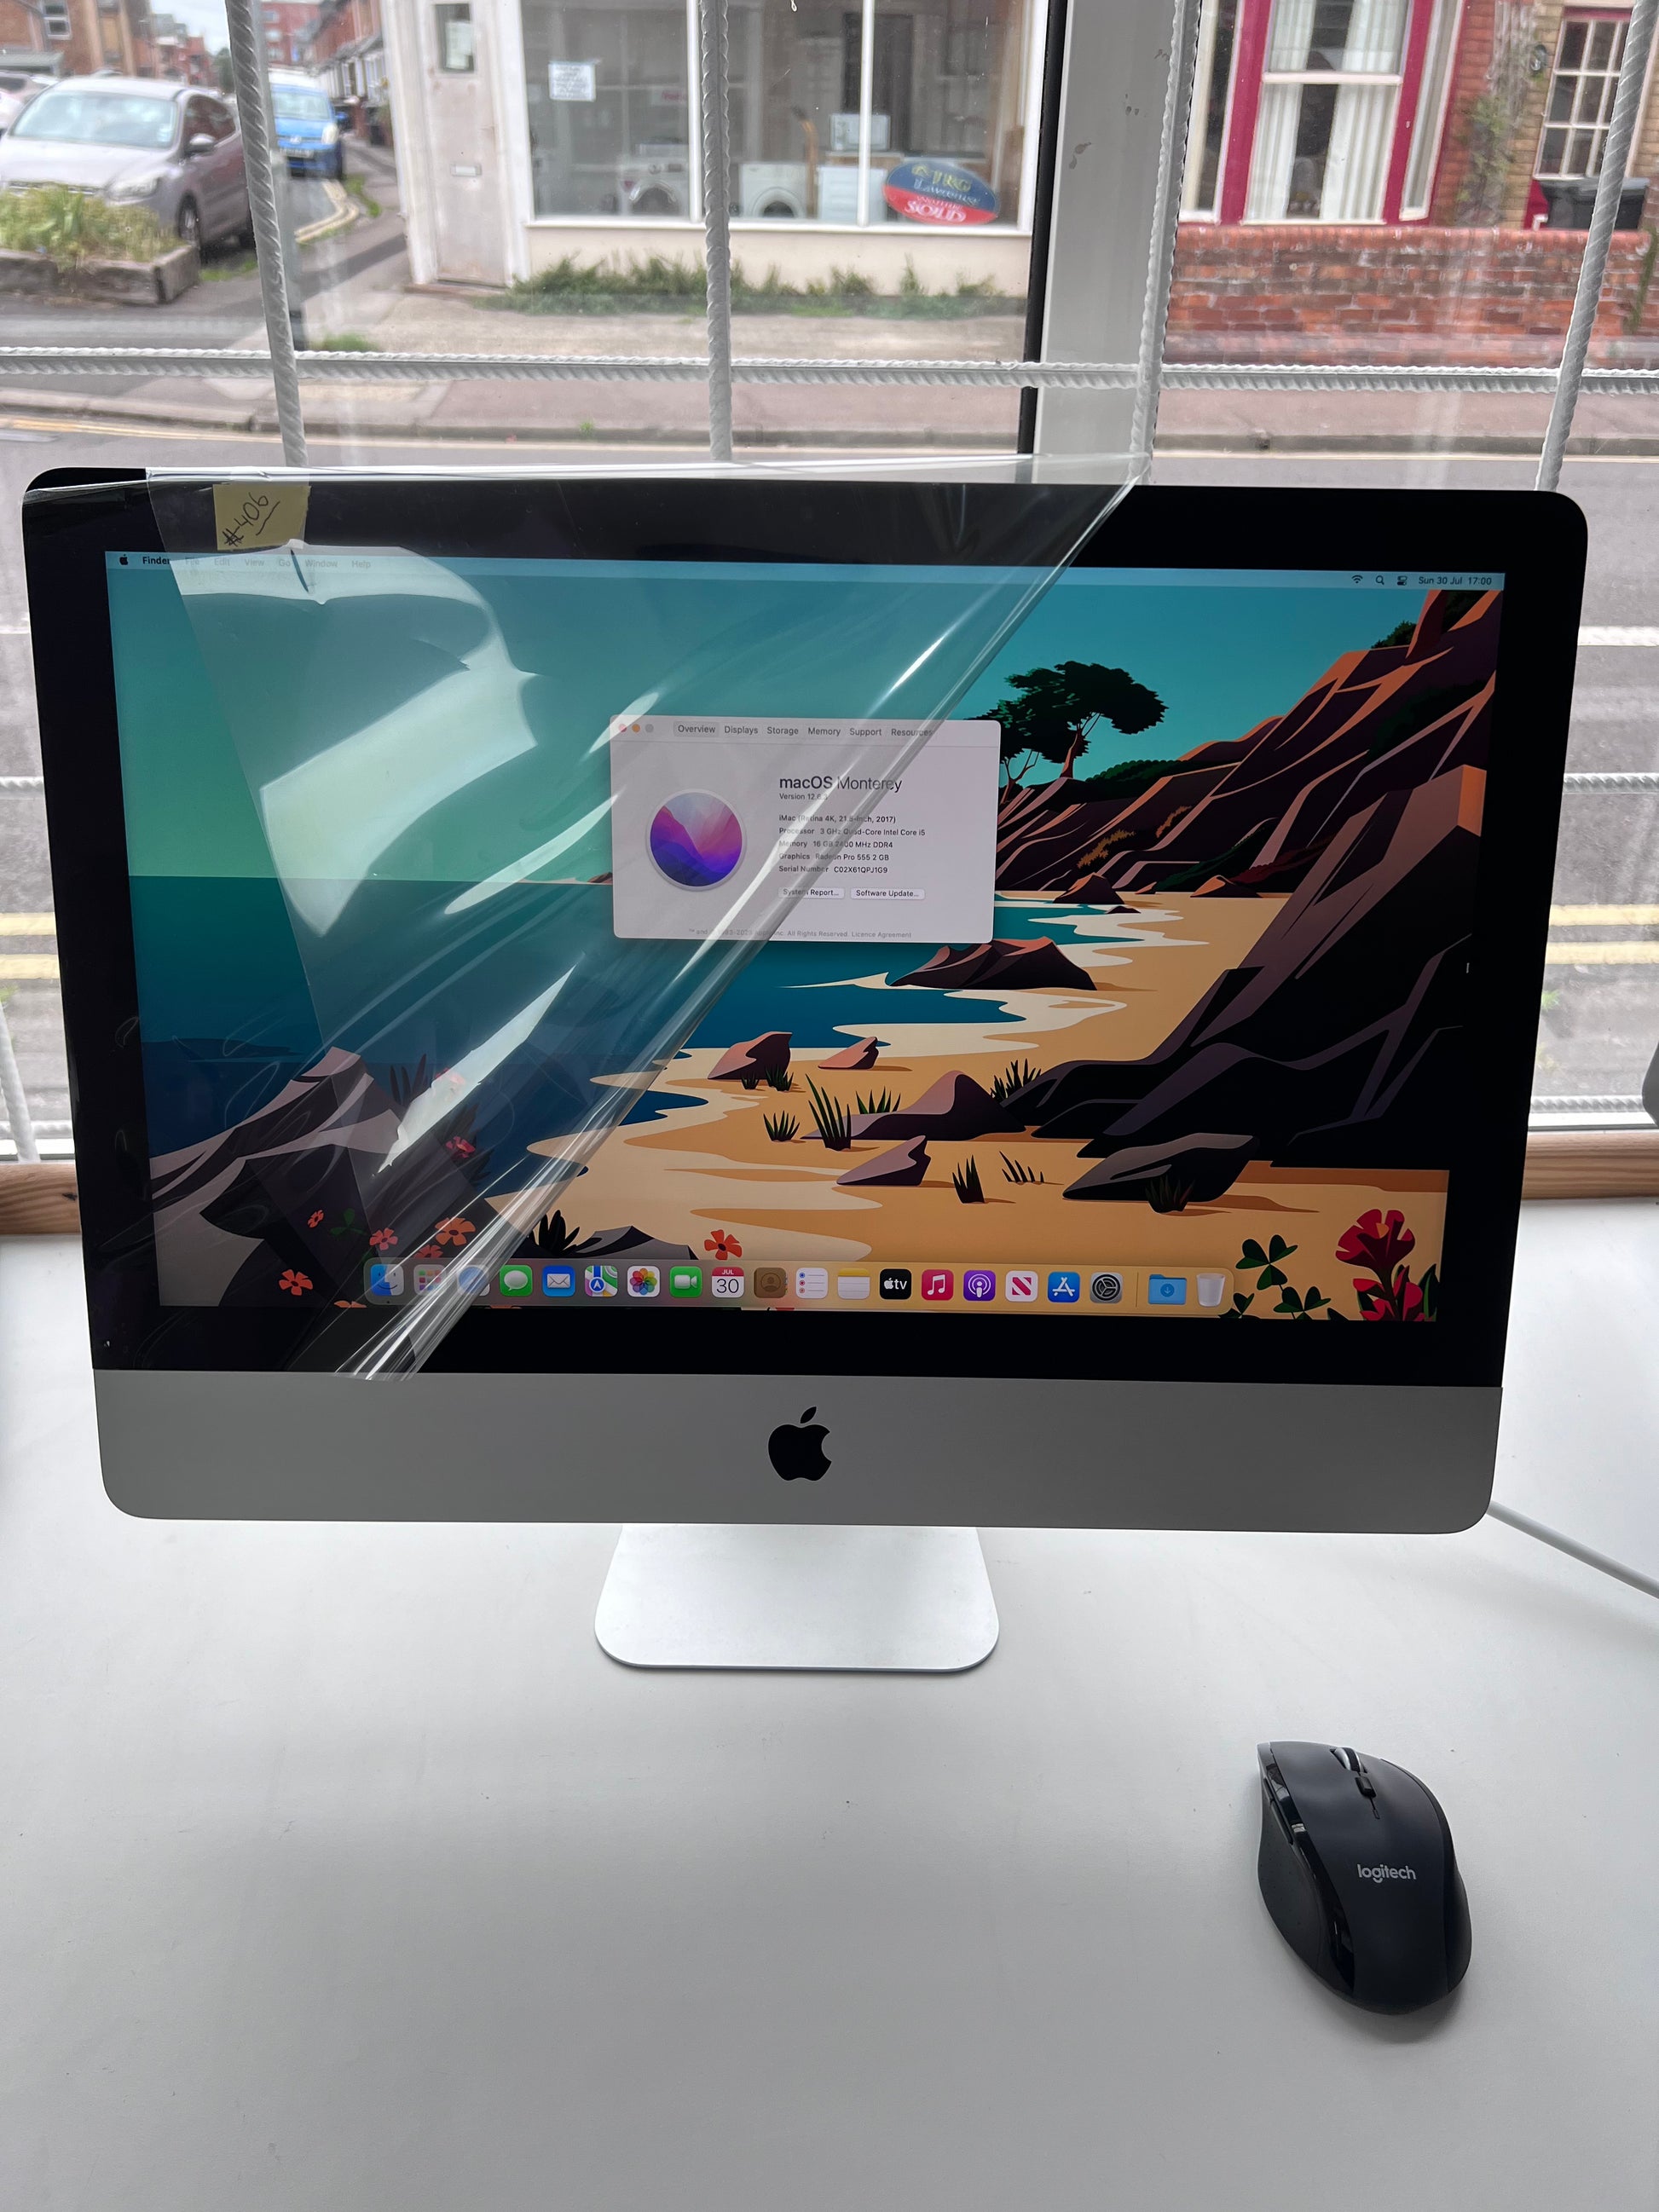 APPLE iMac IMAC 2017 21.5 rentina - Macデスクトップ